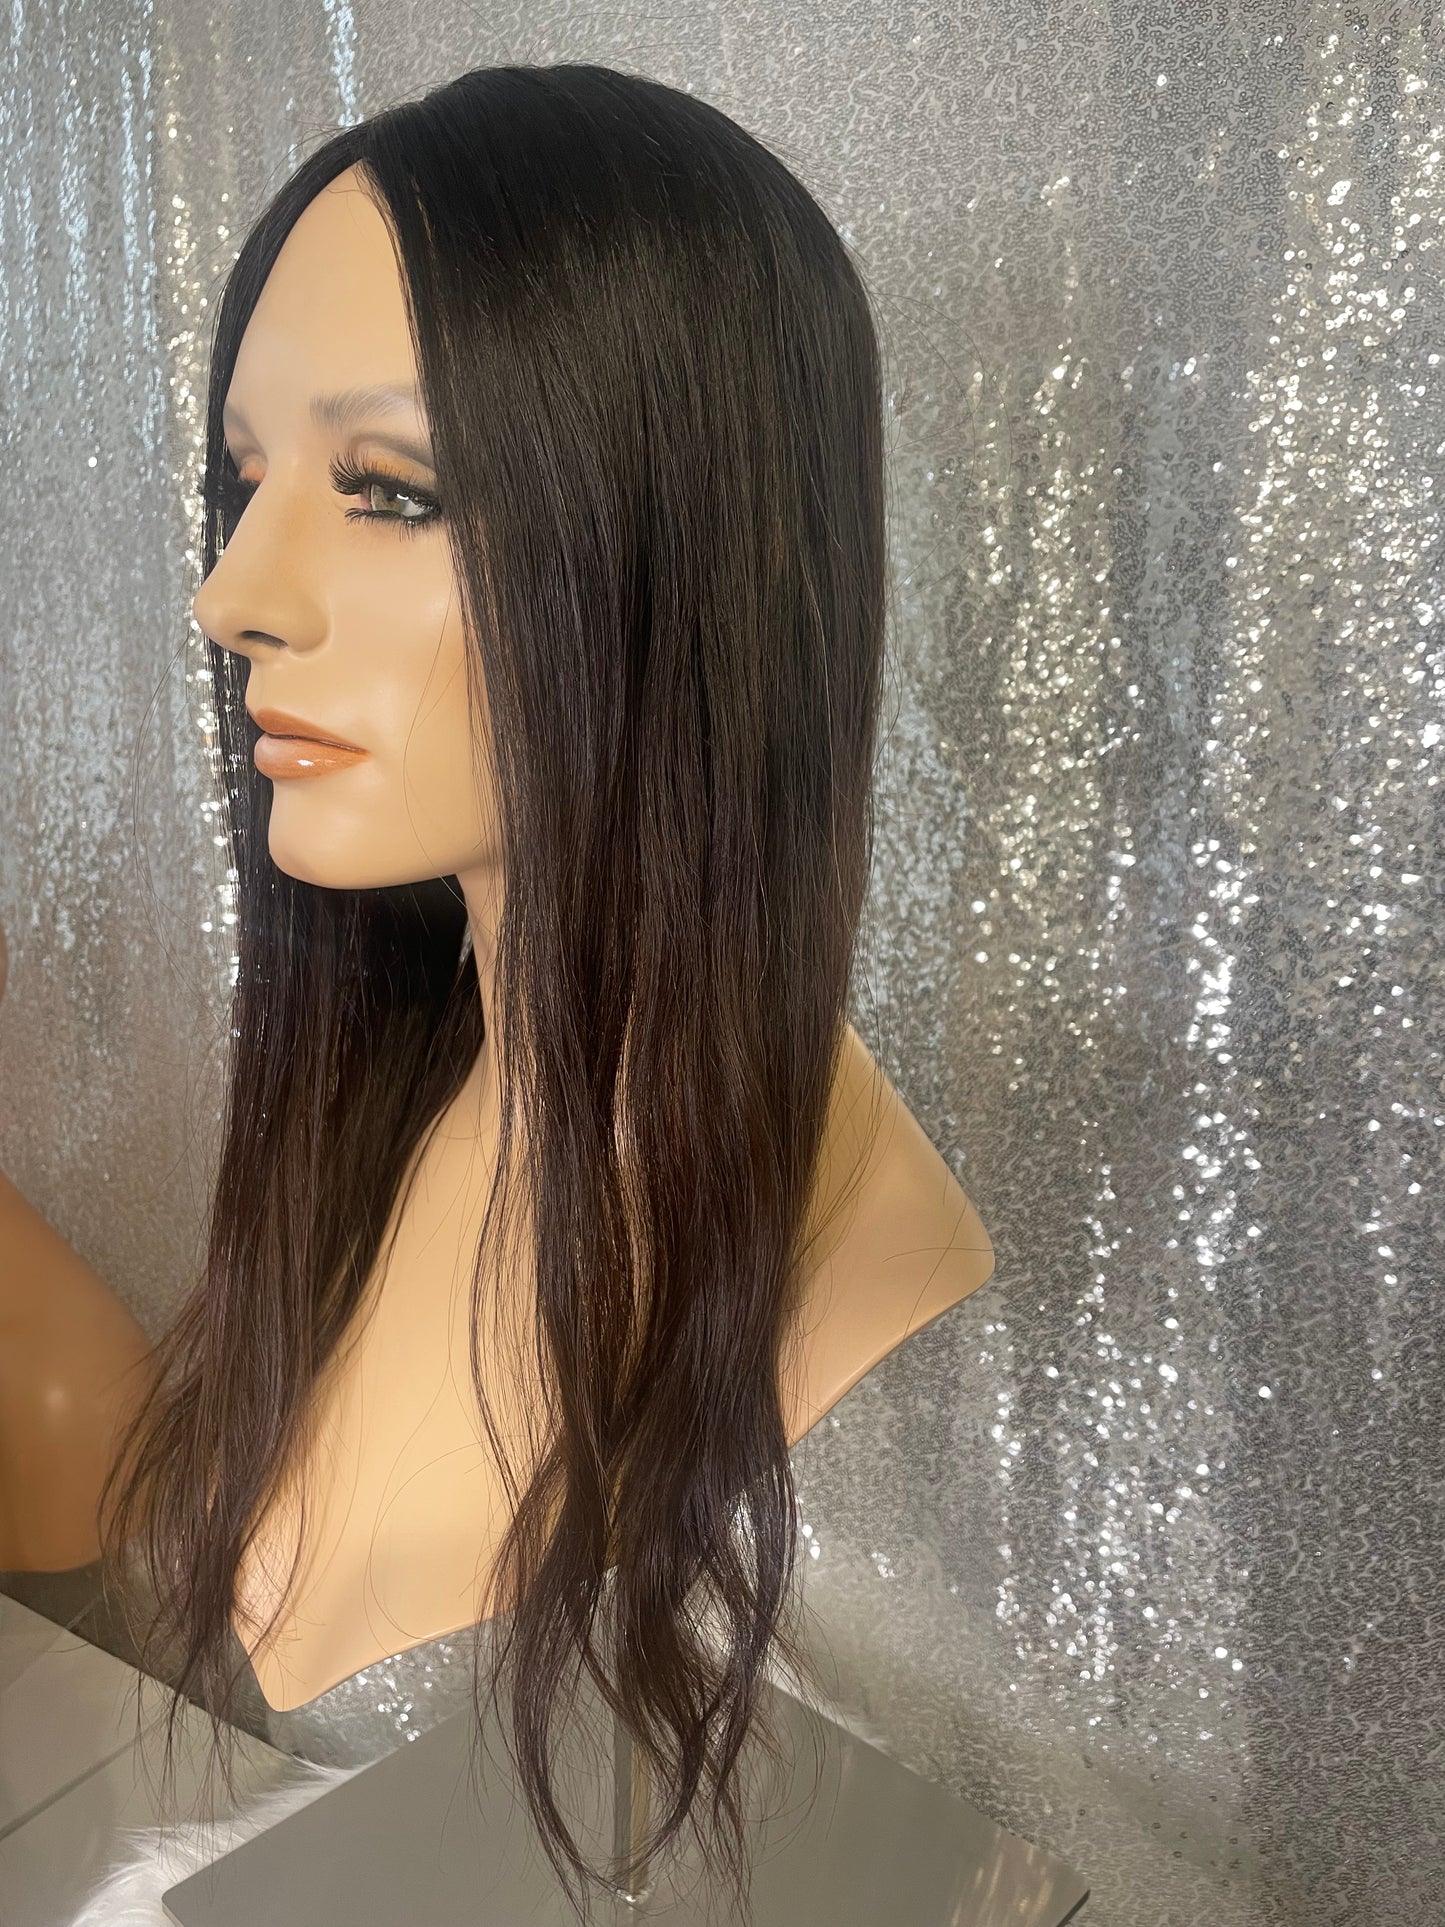 Topper Veronica - 6x6 inch / 130% / 20 inch / european hair 